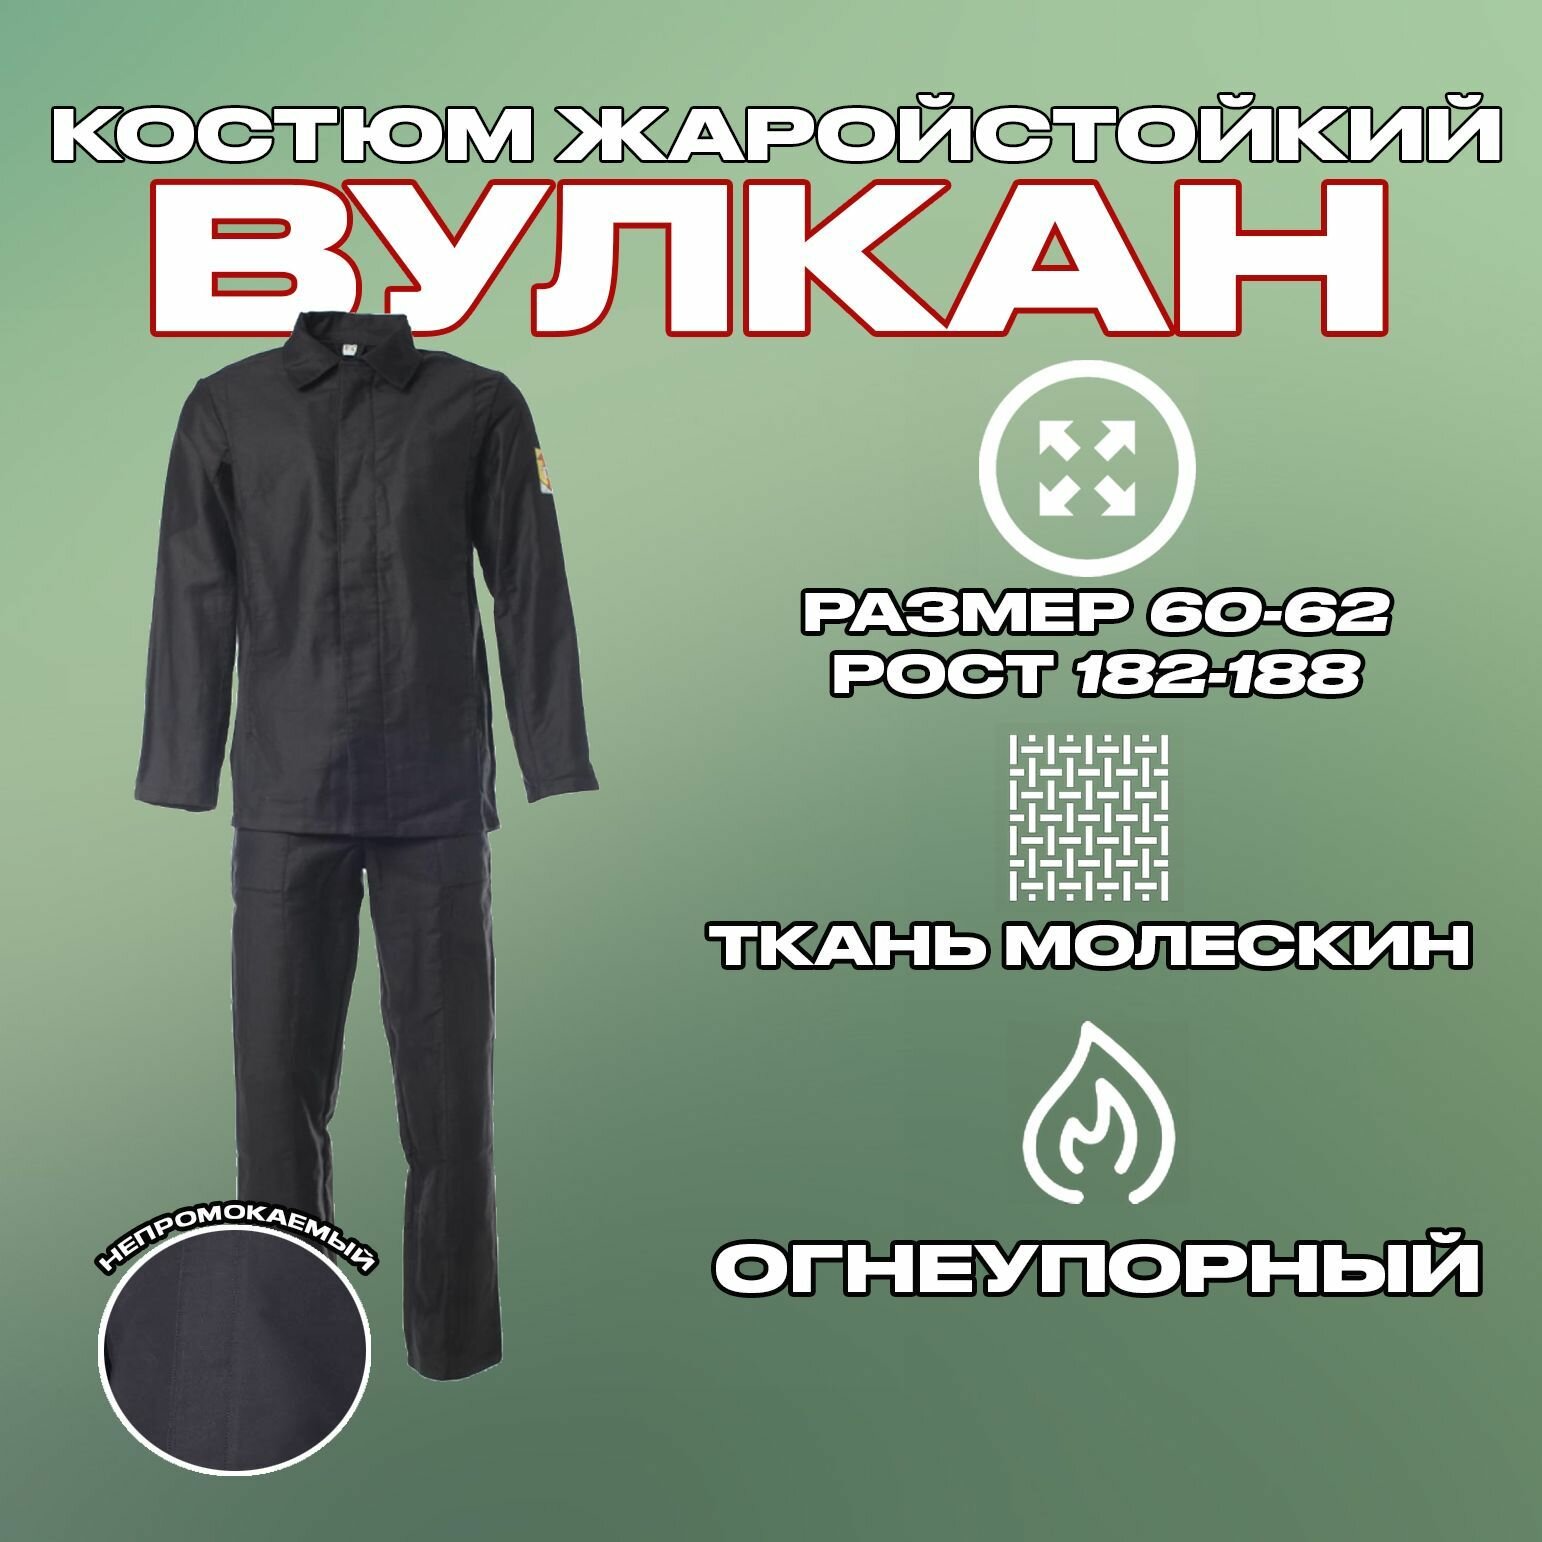 Костюм вулкан жаростойкий черный молескин (куртка + брюки) Размер 60-62 / Рост 182-188